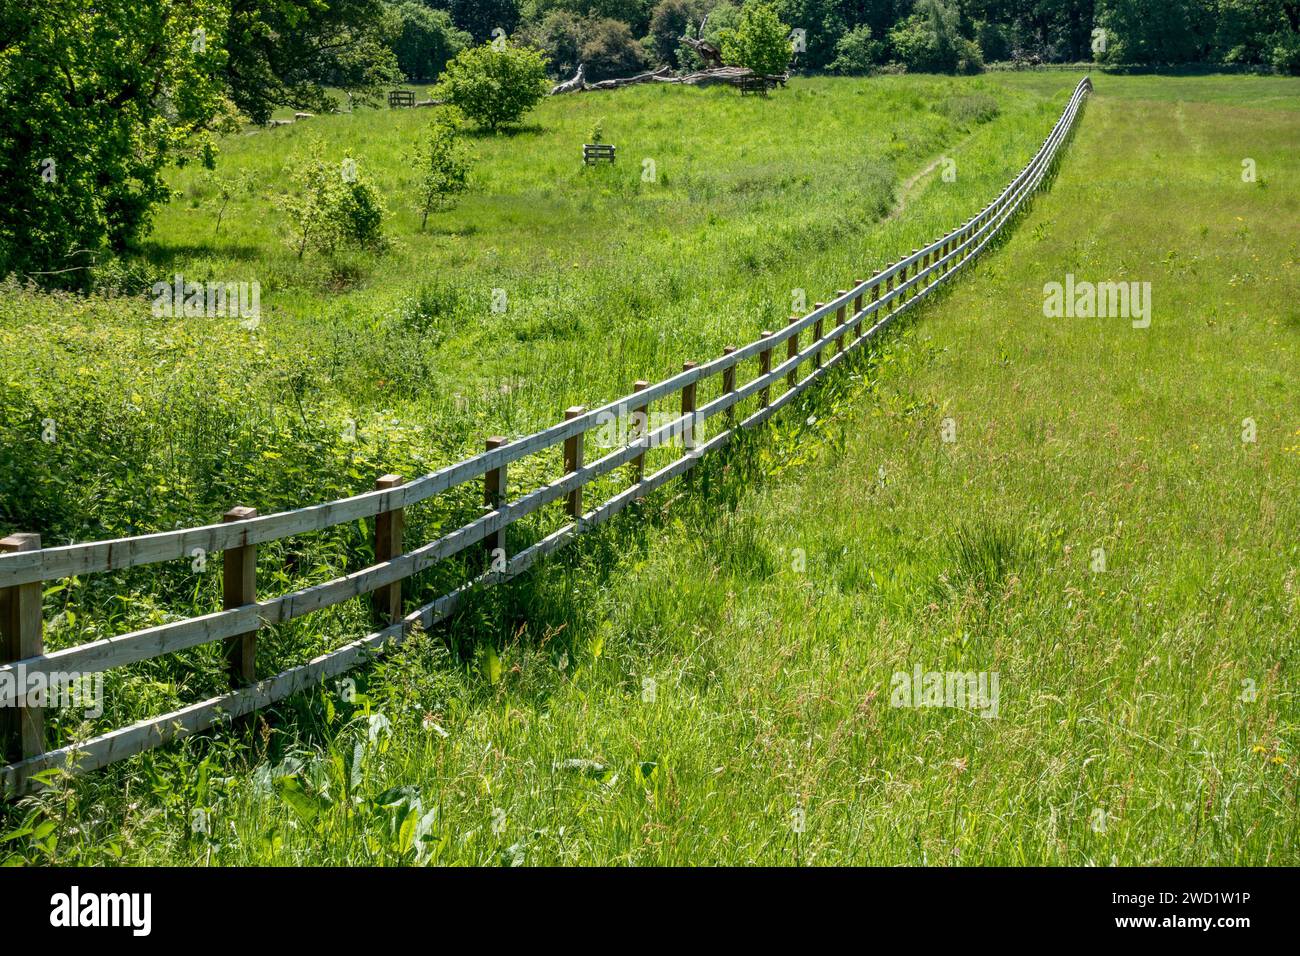 Langer, gerader, hölzerner Pfosten- und Eisenbahnzaun über ein Feld mit grünem Gras mit Waldbäumen dahinter, Derbyshire, England, Großbritannien Stockfoto